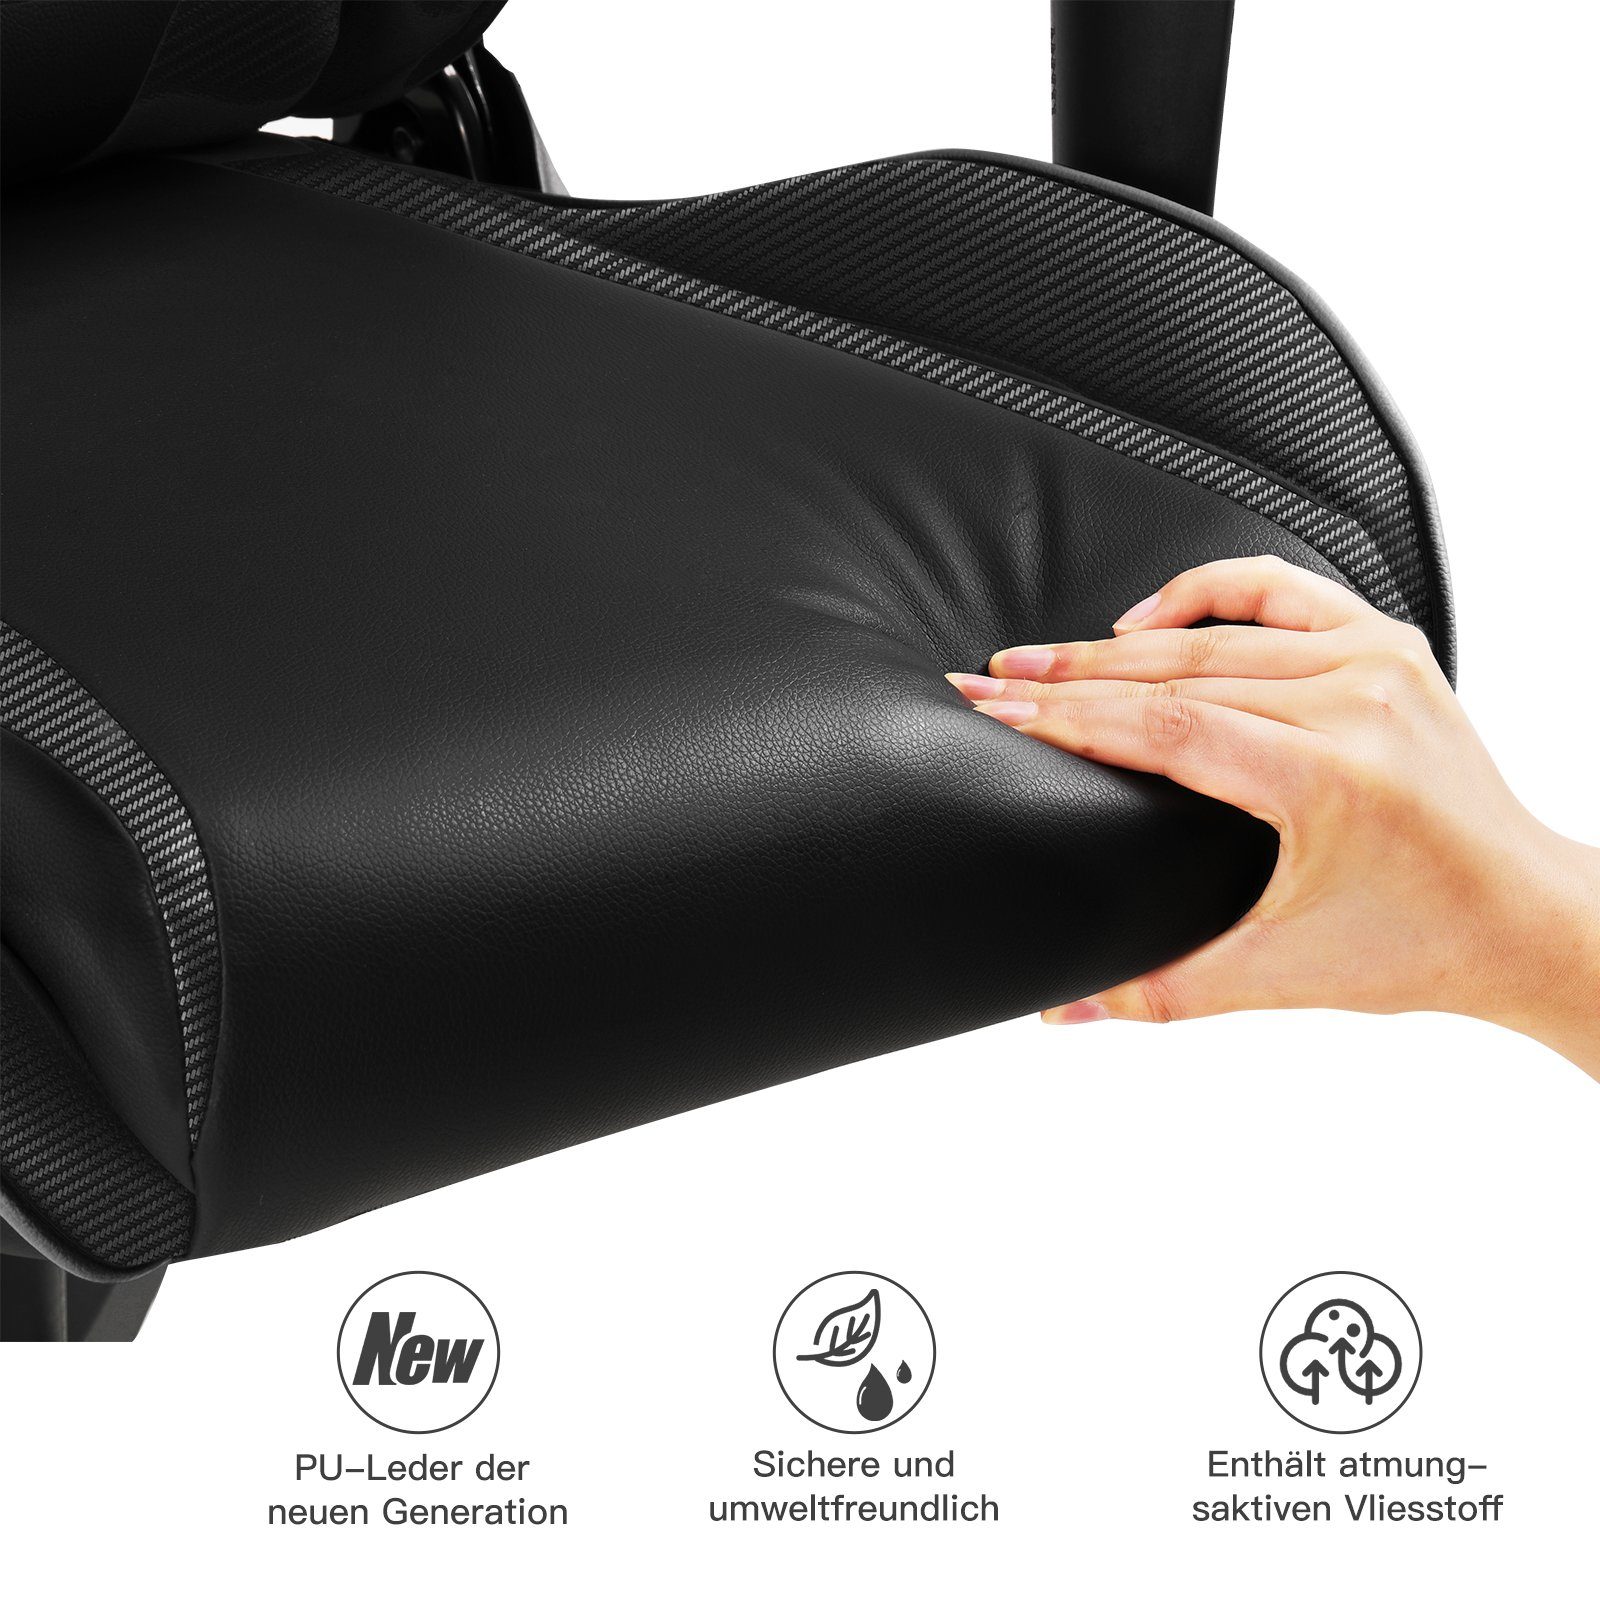 Bürostuhl und Lenden- GTPLAYER supports function waist inkl. Gaming-Stuhl reclining Design The schwarz Ergonomische Nackenkissen, the